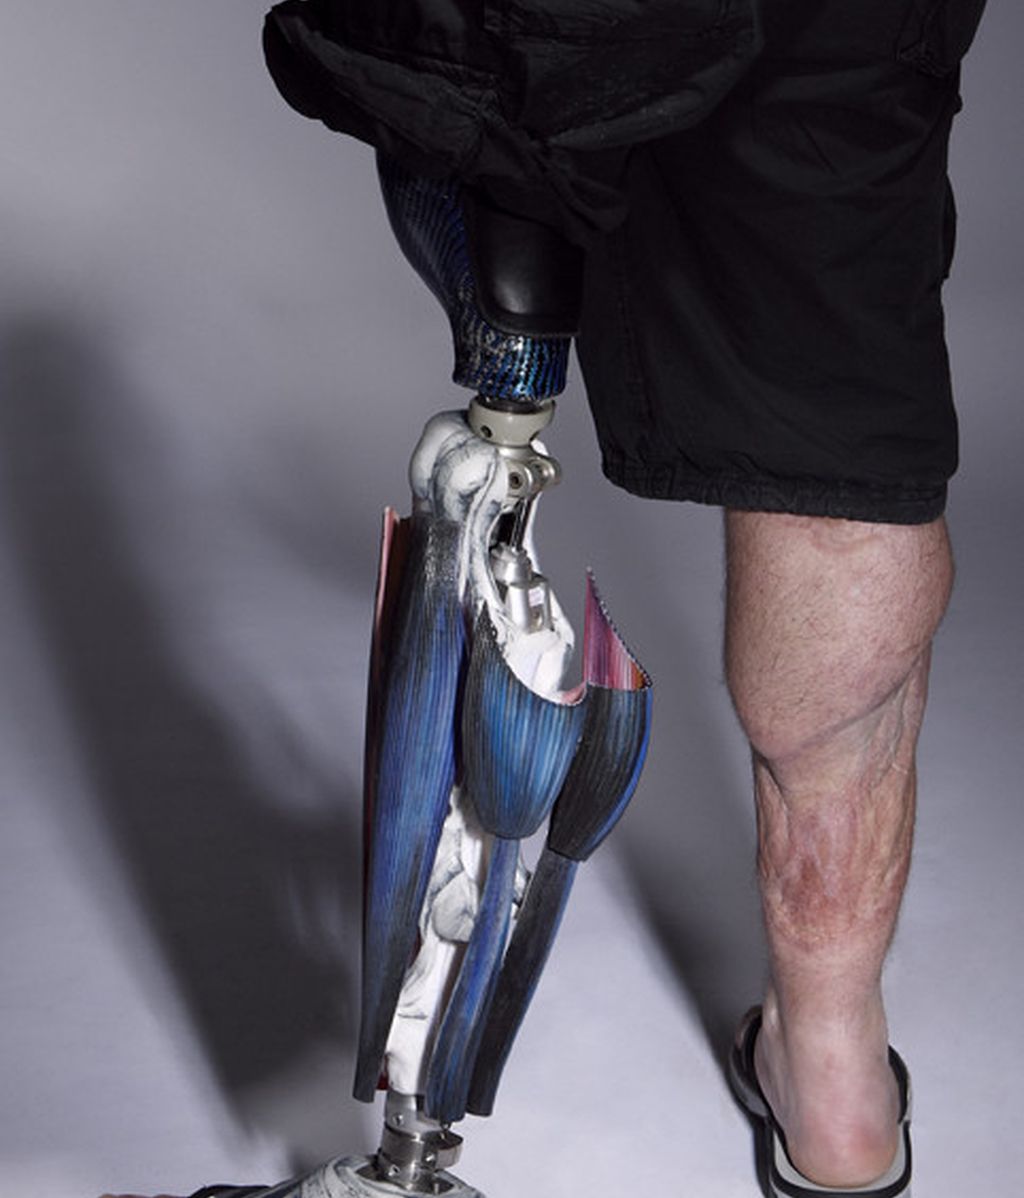 Llegan las prótesis 'fashion', el arte sin barreras